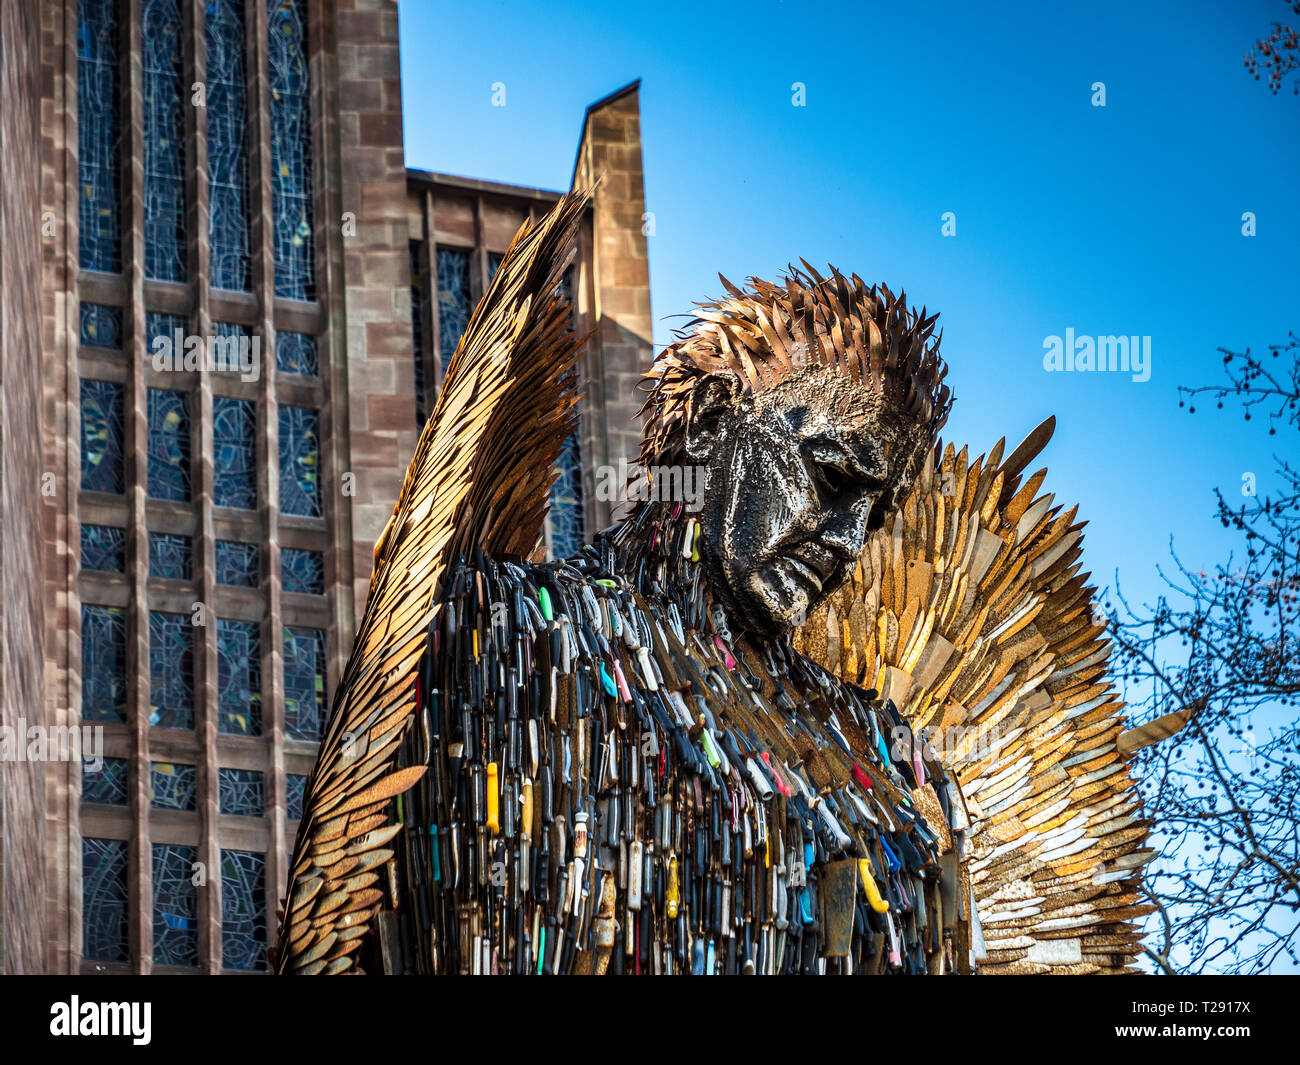 Cathédrale de la statue de Cutter Angel Coventry - 8 m sculpture de Knife Angel faite de 100 000 lames remises à la police à travers le Royaume-Uni. Artiste Alfie Bradley Banque D'Images